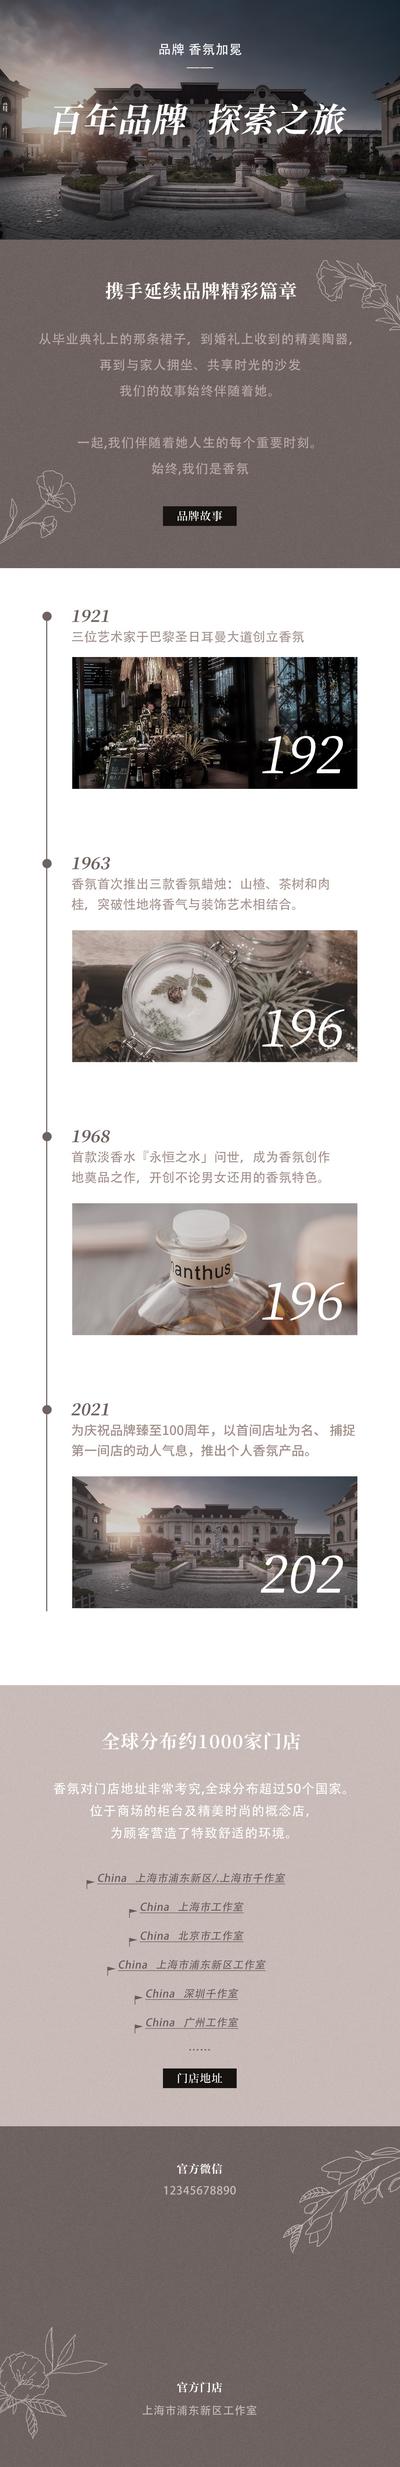 【南门网】广告 海报 香氛 香水 长图 品牌 历程 发展 历史